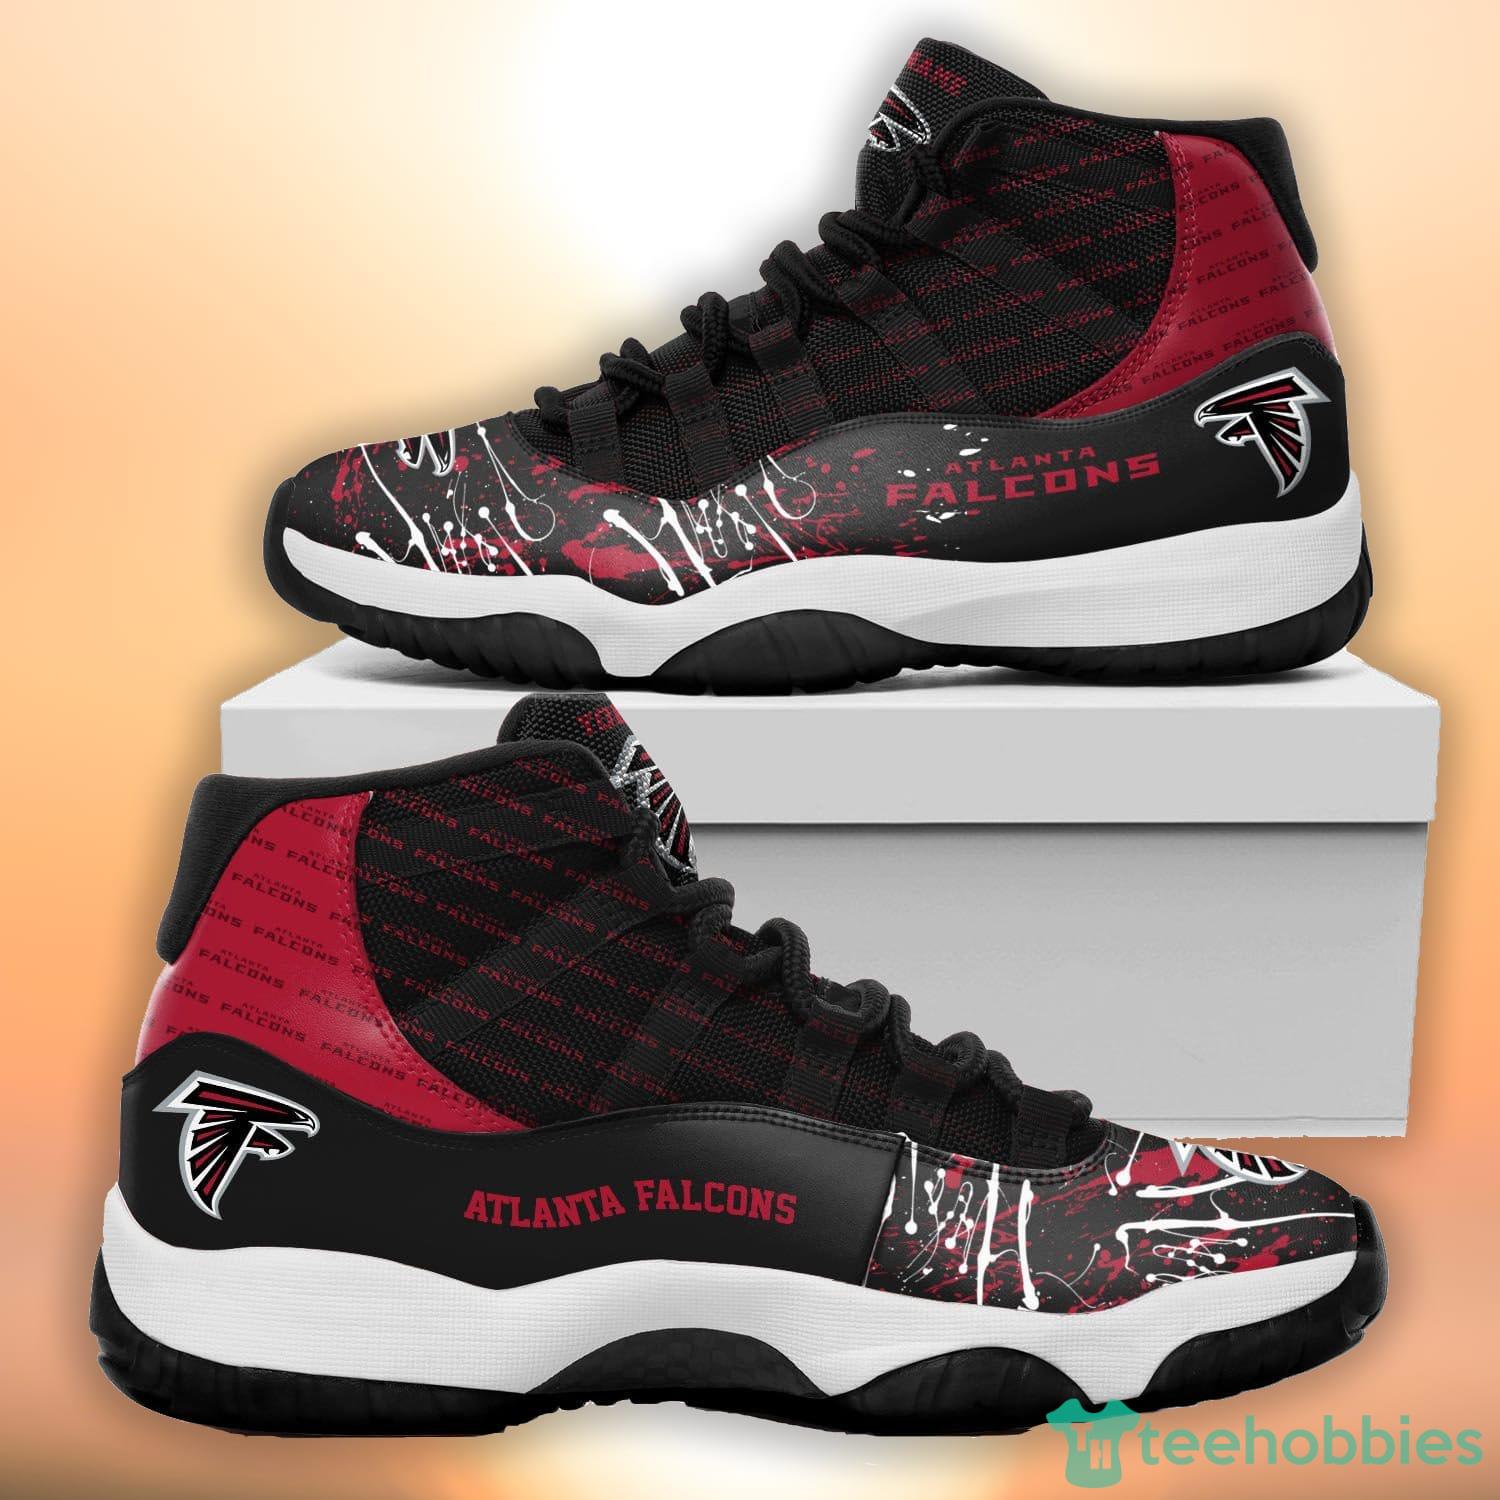 Atlanta Falcons Sport Team Air Jordan 13 Shoes For Men And Women